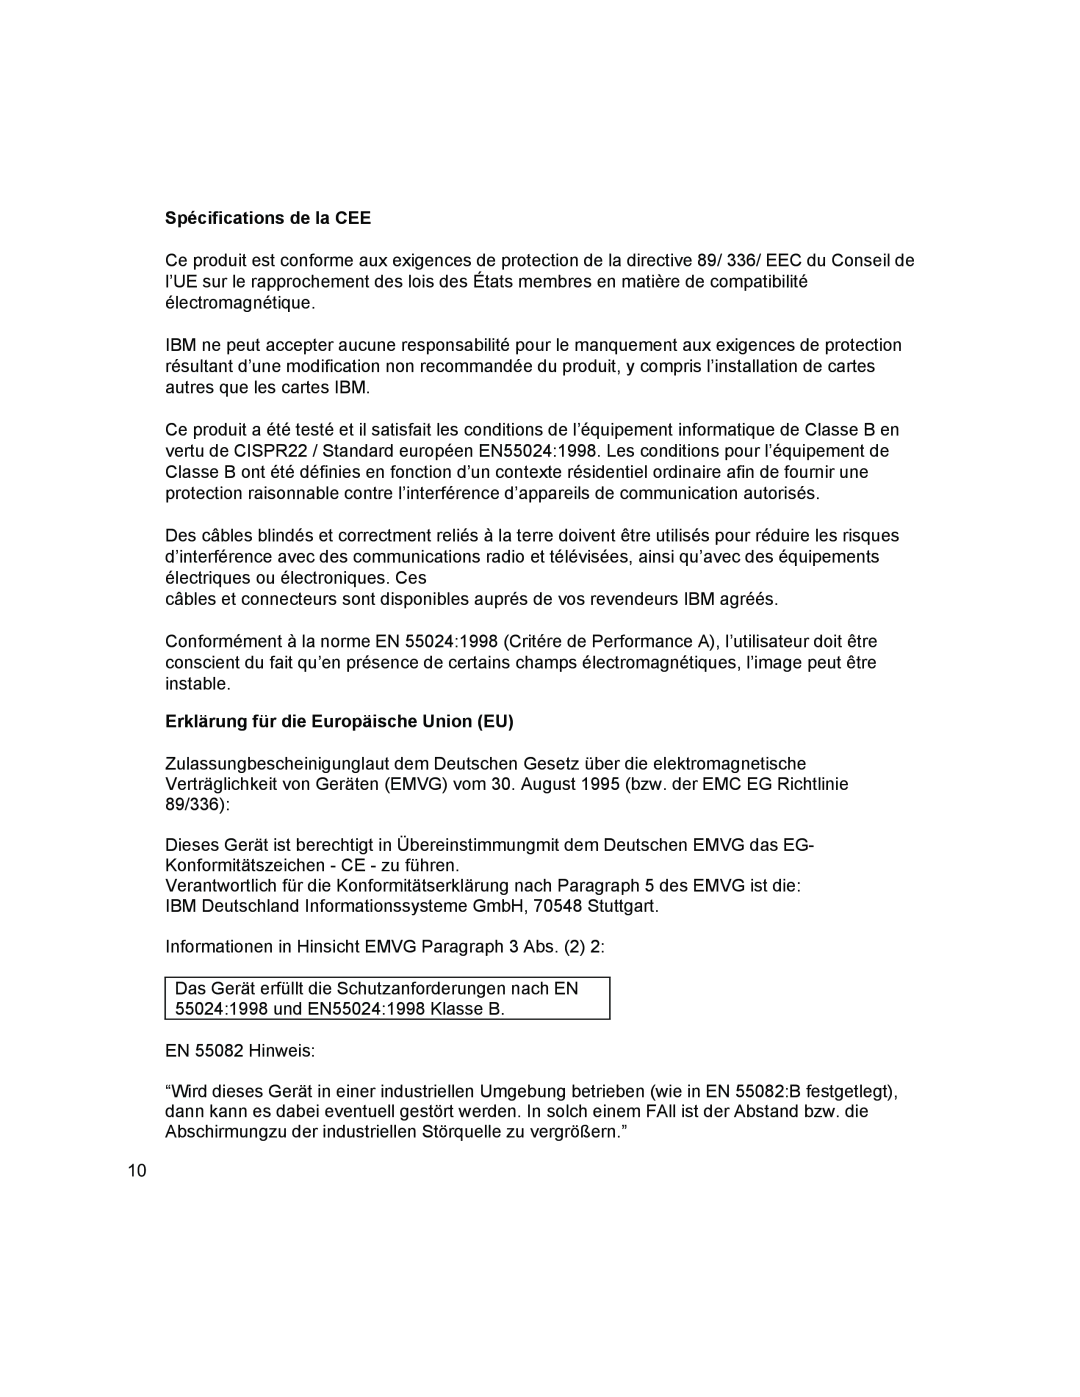 IBM T541A manual Spécifications de la CEE, Erklärung für die Europäische Union EU 